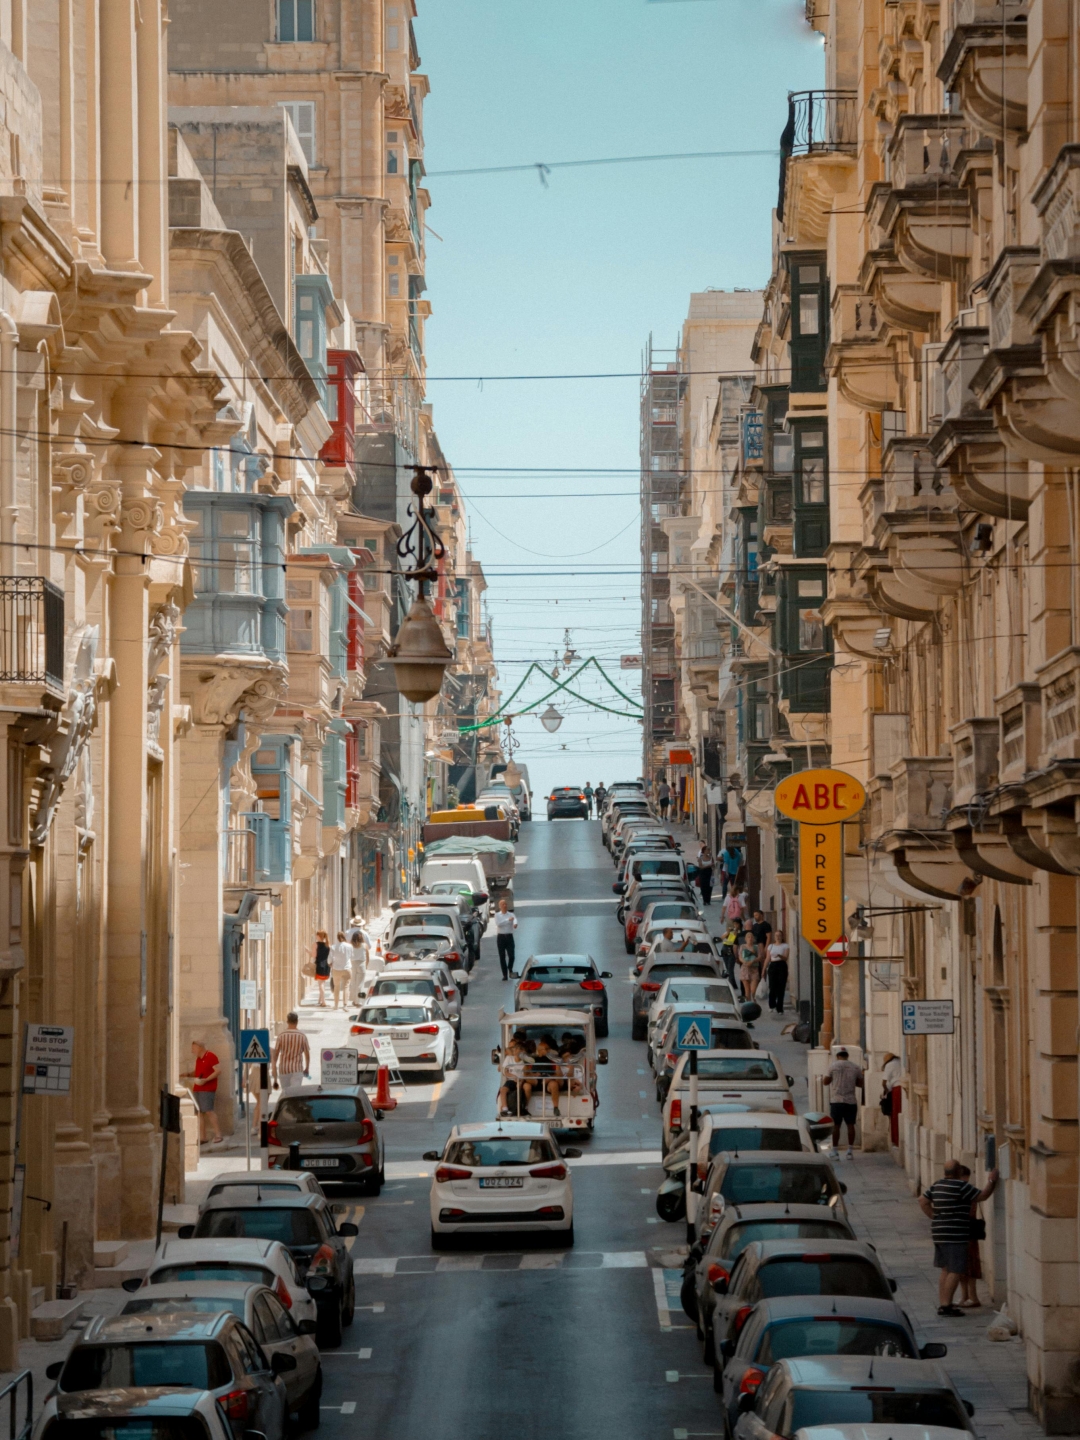 Destinacija koja nas je oduševila: Razlozi zbog kojih se želimo vratiti na Maltu